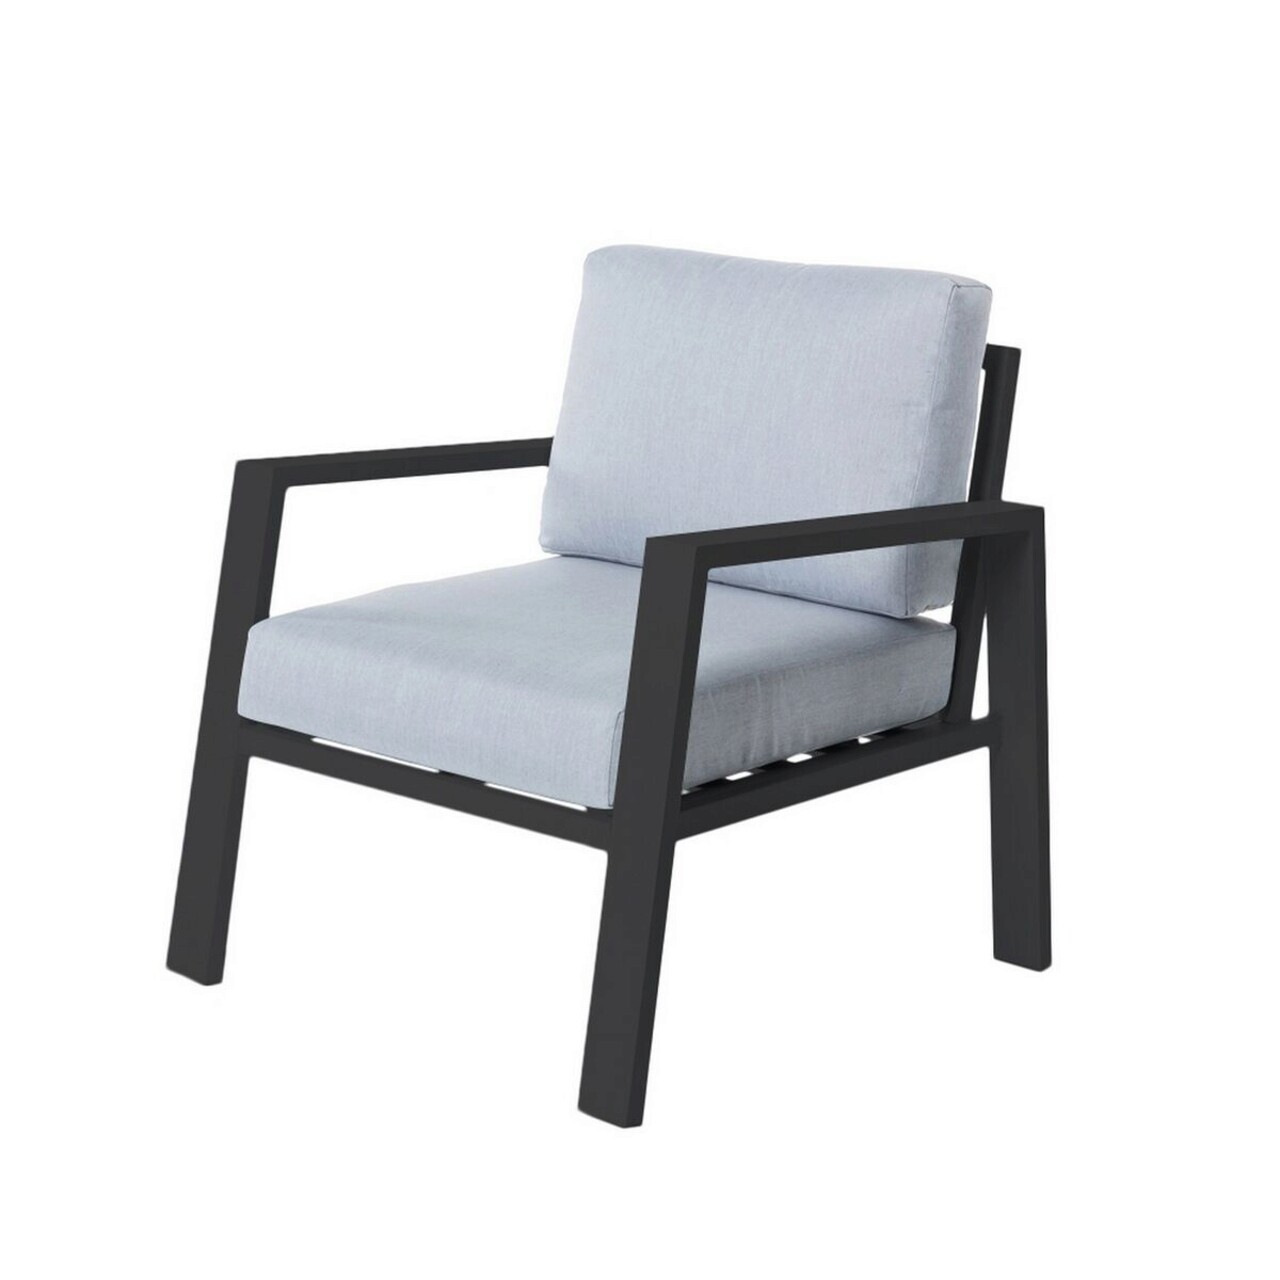 Thais Kerti fotel, 73.2 x 74.8 x 73.3 cm, alumínium/poliészter, grafitszürke